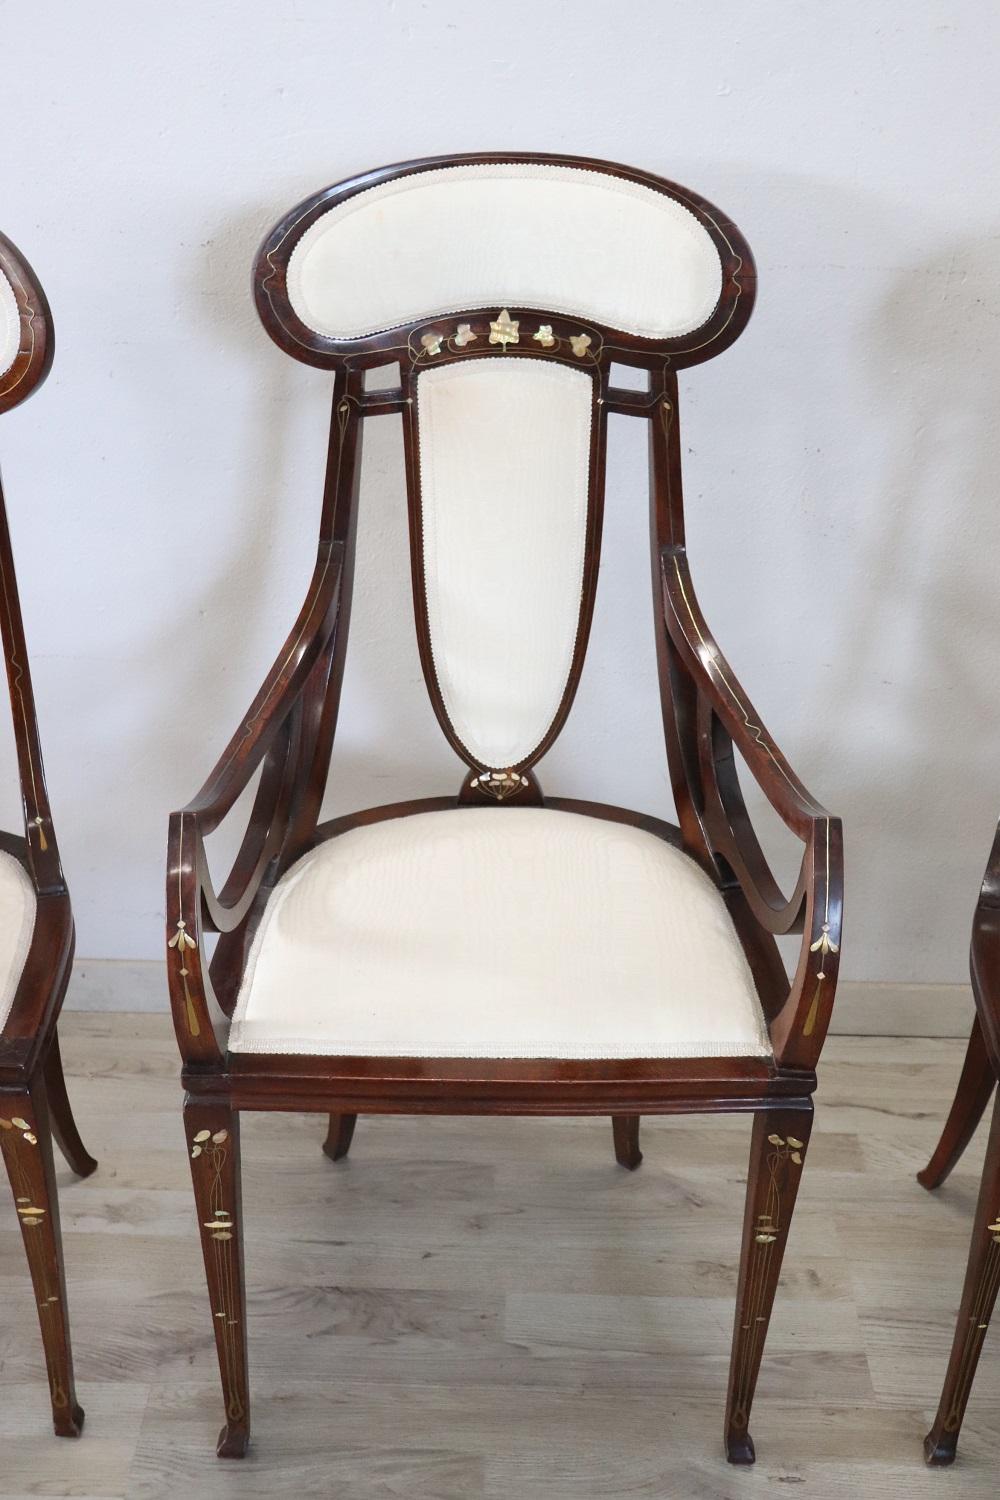 Rare ensemble Art nouveau italien des années 1900 :
1 fauteuil
2 chaises

Très rares chaises et fauteuil de Carlo Zen, ces chaises sont en noyer incrusté de nacre et de laiton et sont encore garnies du tissu de soie d'origine. Au début du XXe